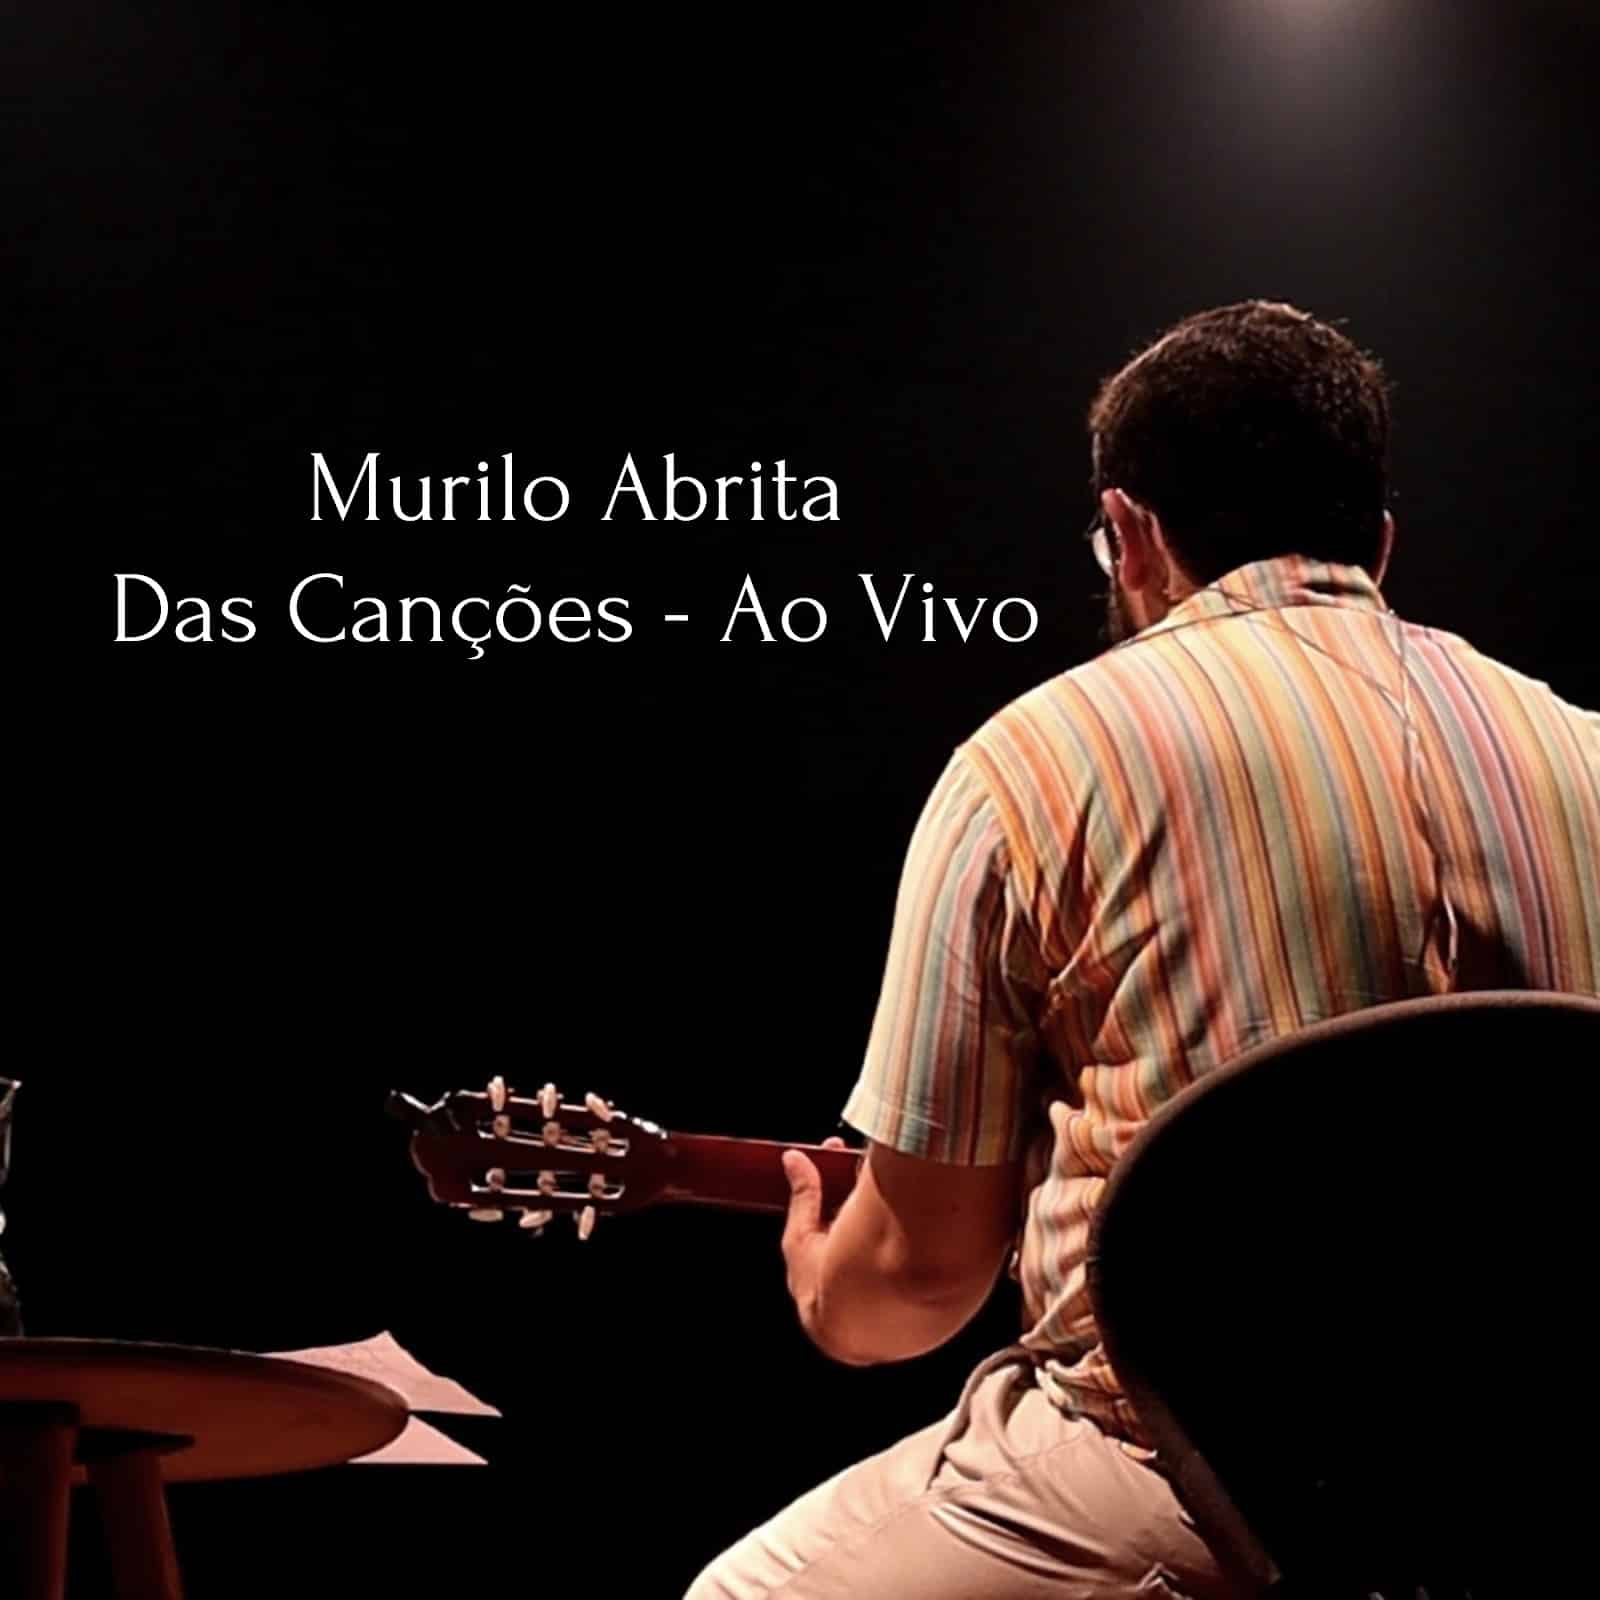 revistaprosaversoearte.com - Murilo Abrita lança álbum ao vivo 'Das Canções'